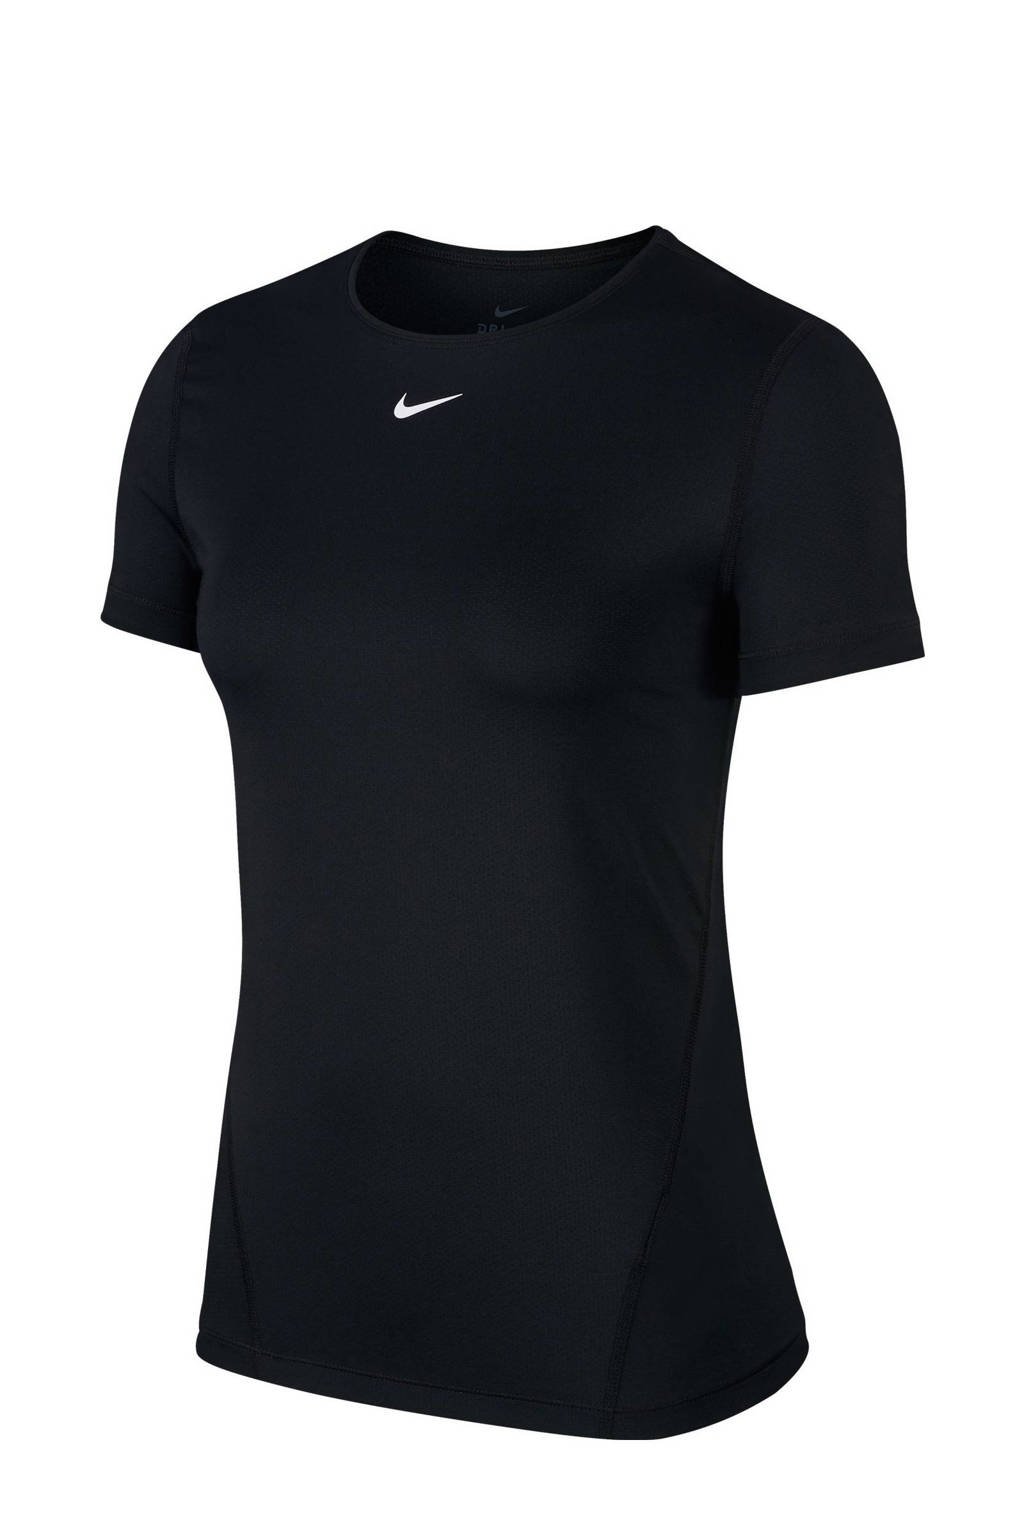 Zwarte dames Nike Plus Size sport T-shirt van polyester met korte mouwen en ronde hals